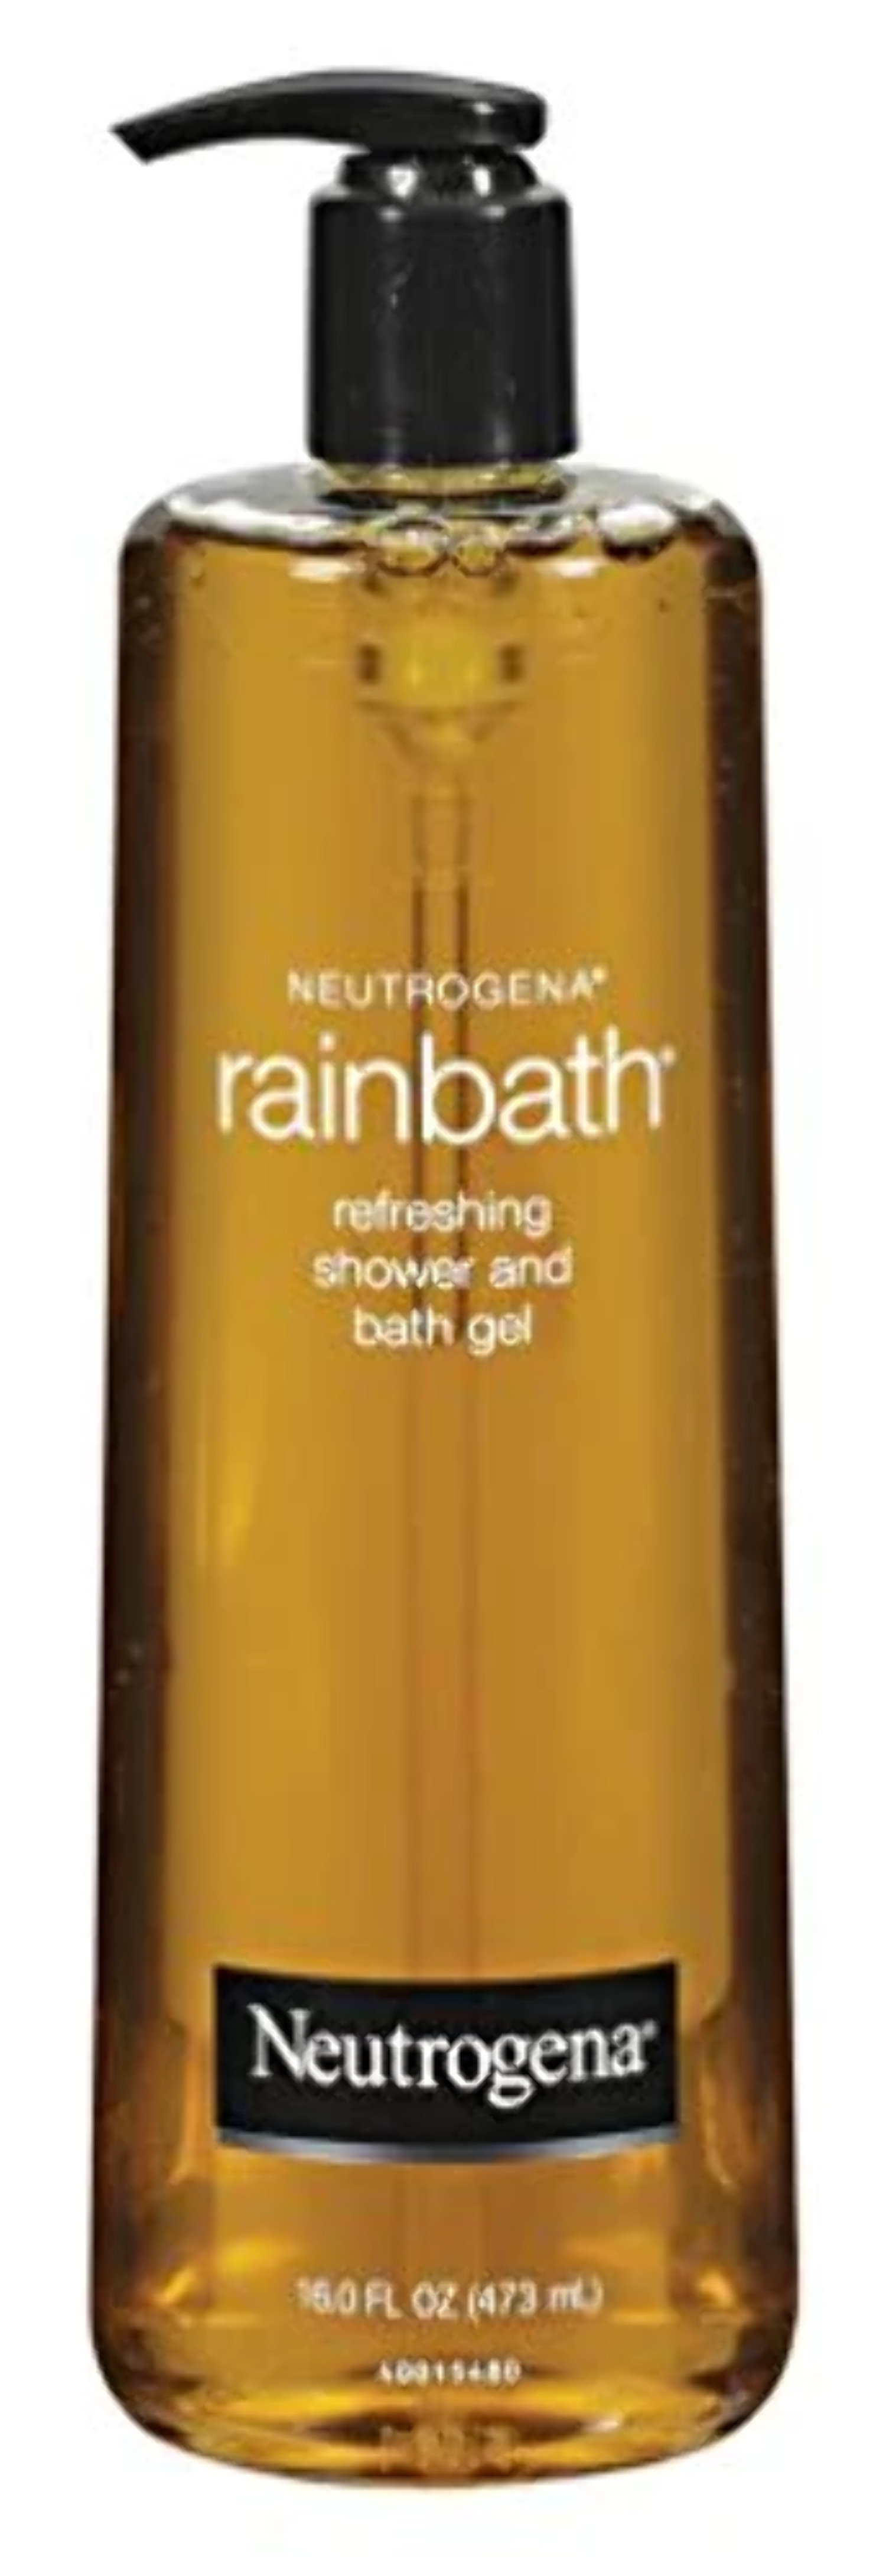 Neutrogena Rainbath Refreshing Shower & Bath Gel, Original, 16 fl. oz - image 1 of 2